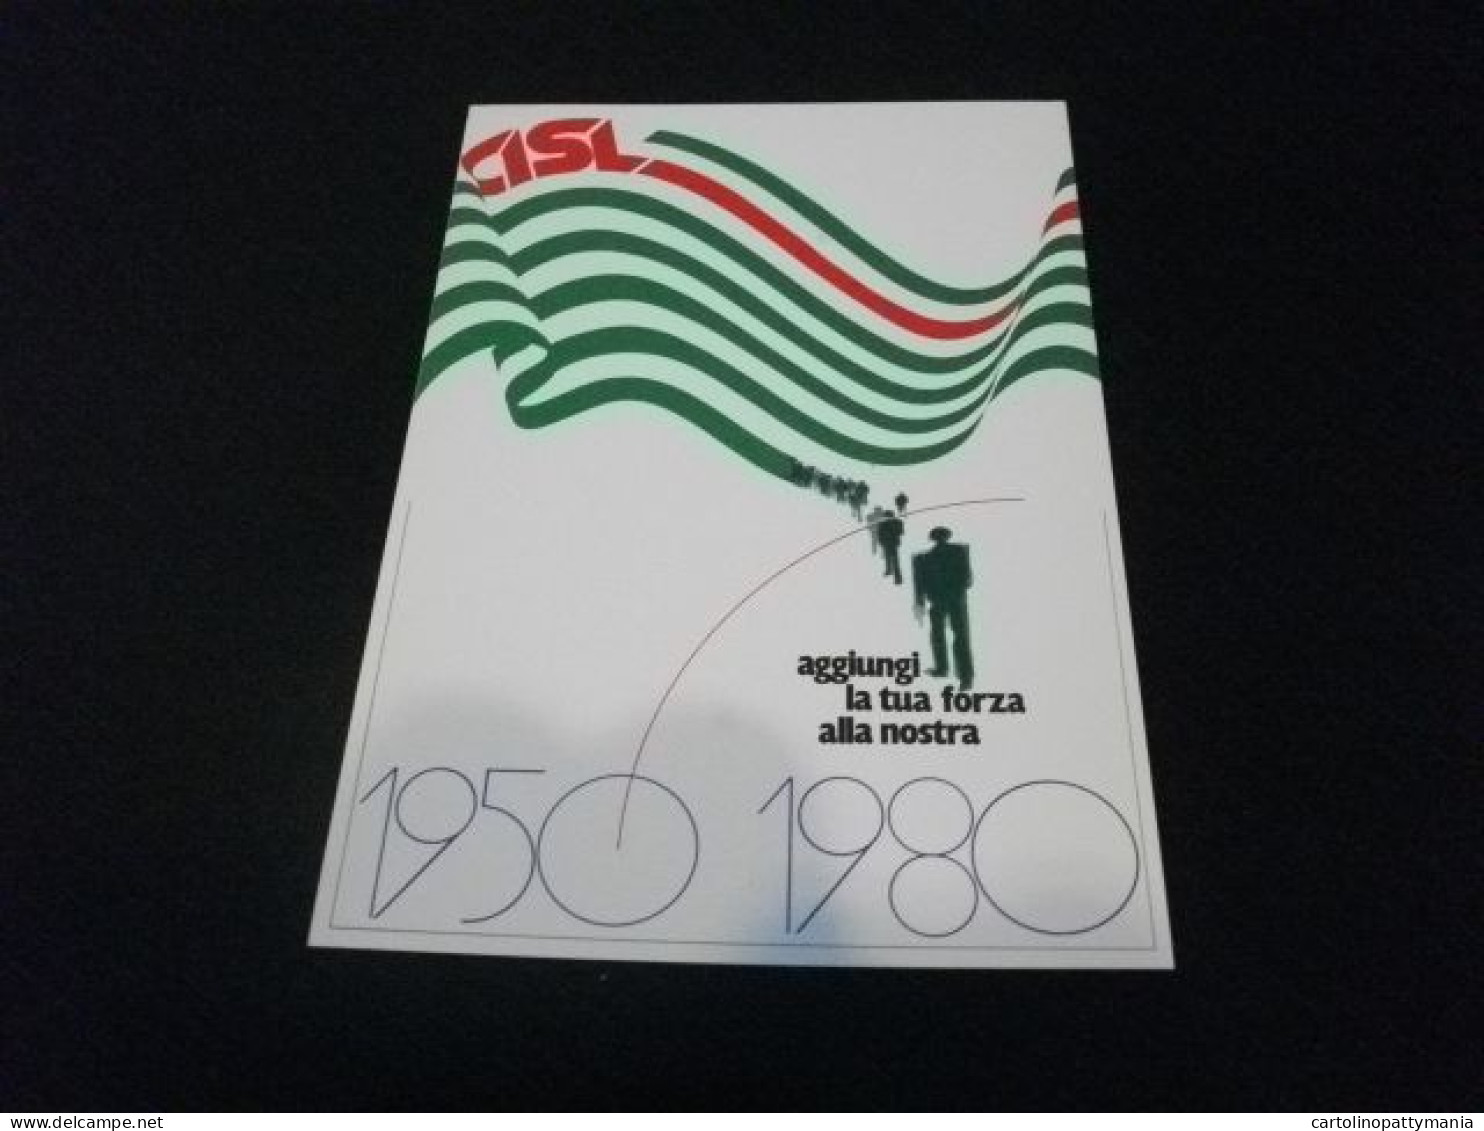 CISL SINDACATO 1950 1980 AGGIUNGI LA TUA FORZA ALLA NOSTRA TRENTENNALE CISL  ILLUSTRATORE P. MAOLONI - Labor Unions